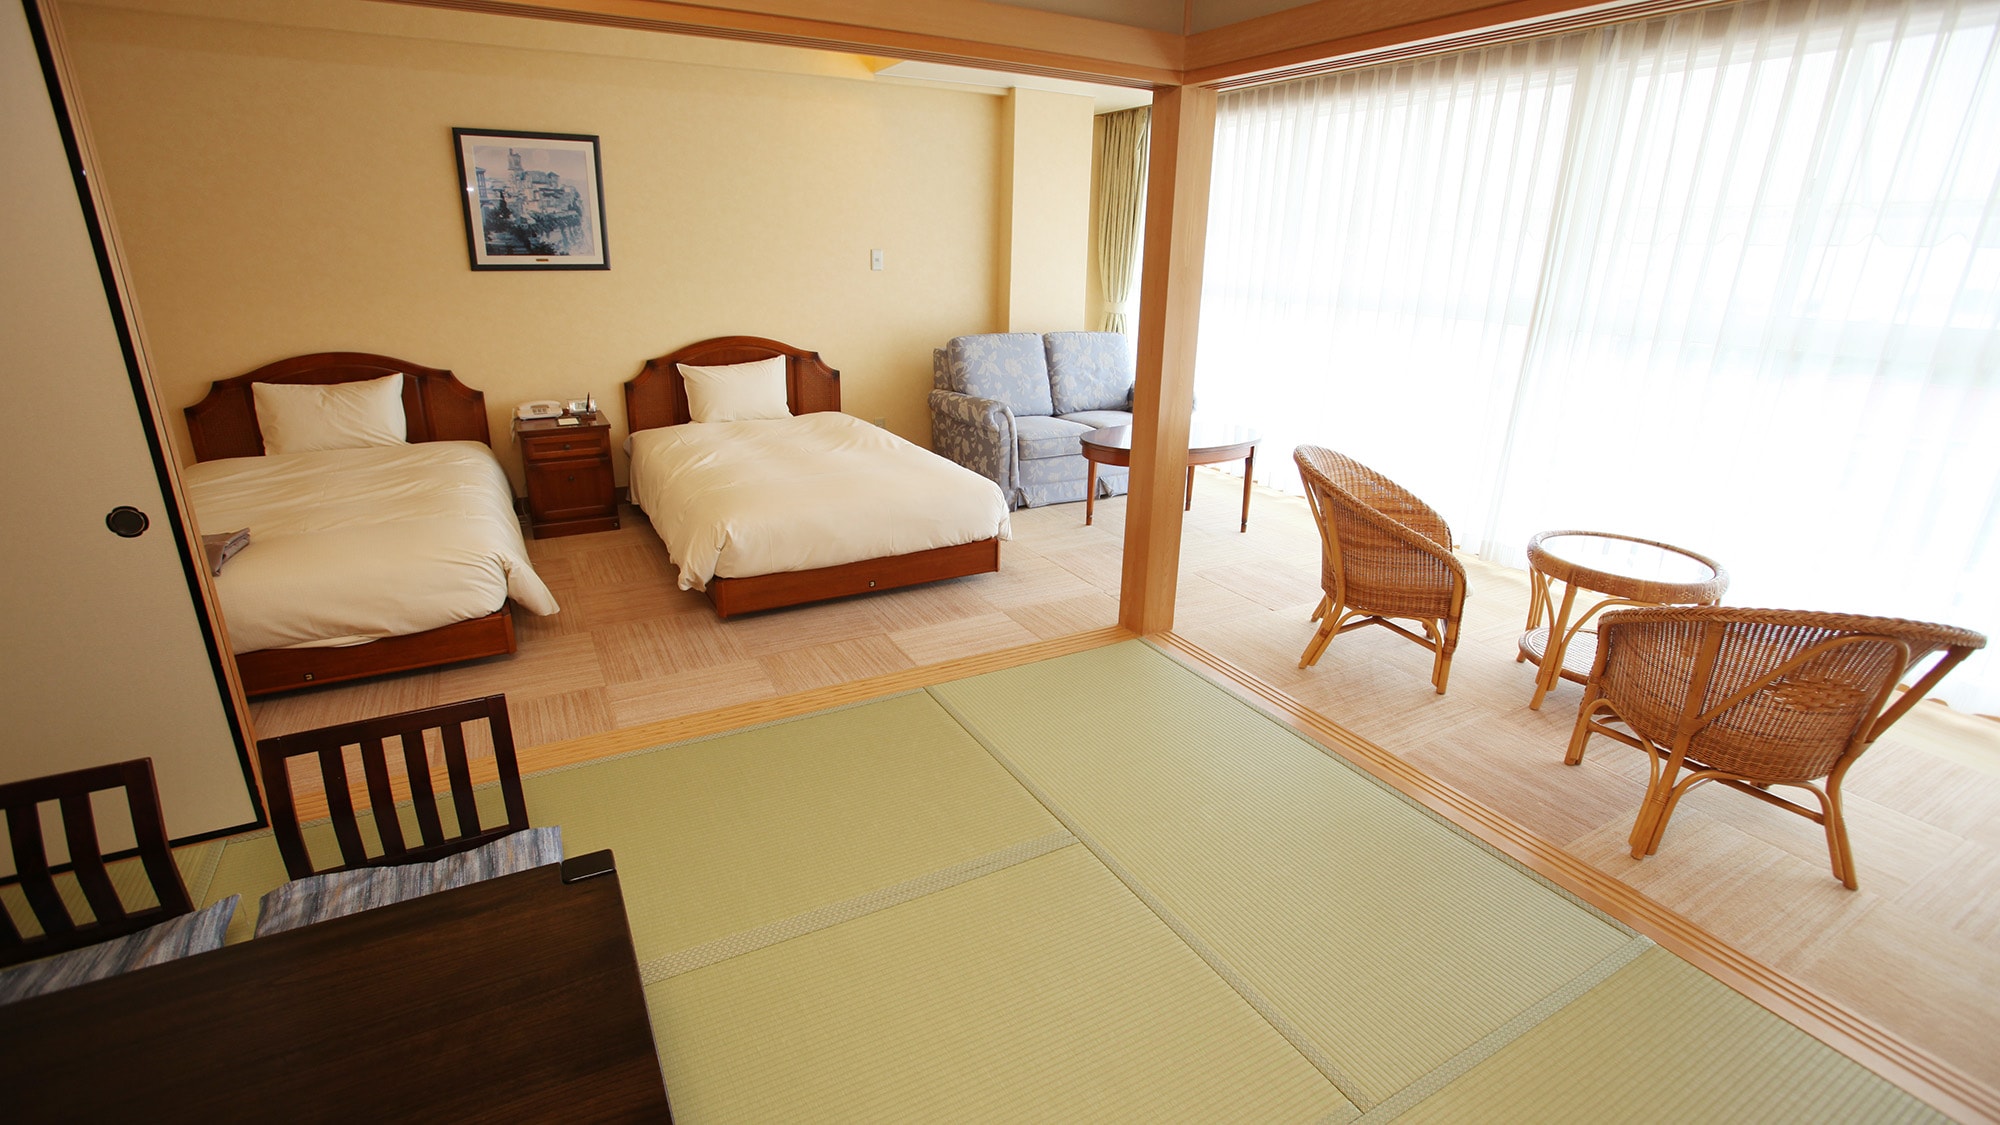 * & lt; 日式和西式房间的例子 & gt; 日式和西式的融合 ♪ 睡觉时一张床，放松时一张榻榻米 ♪ 这是一个会实现的房间。